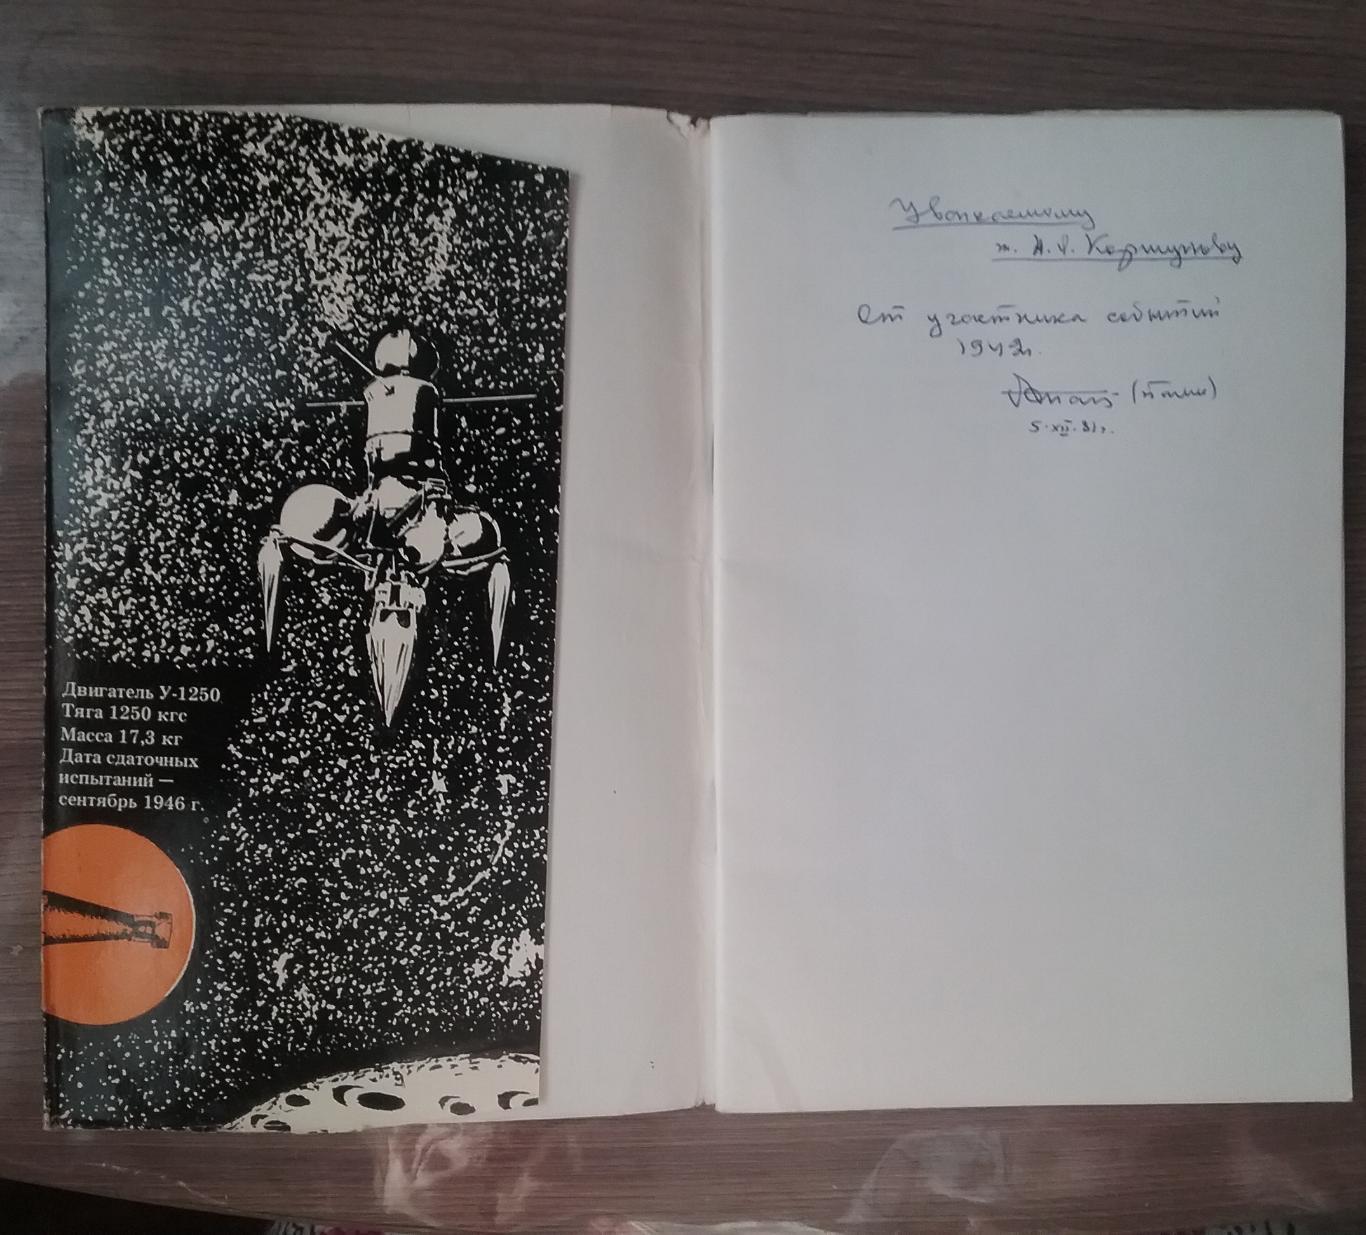 Первые шаги к космическим двигателямс автографом участника событий 1942г. 2